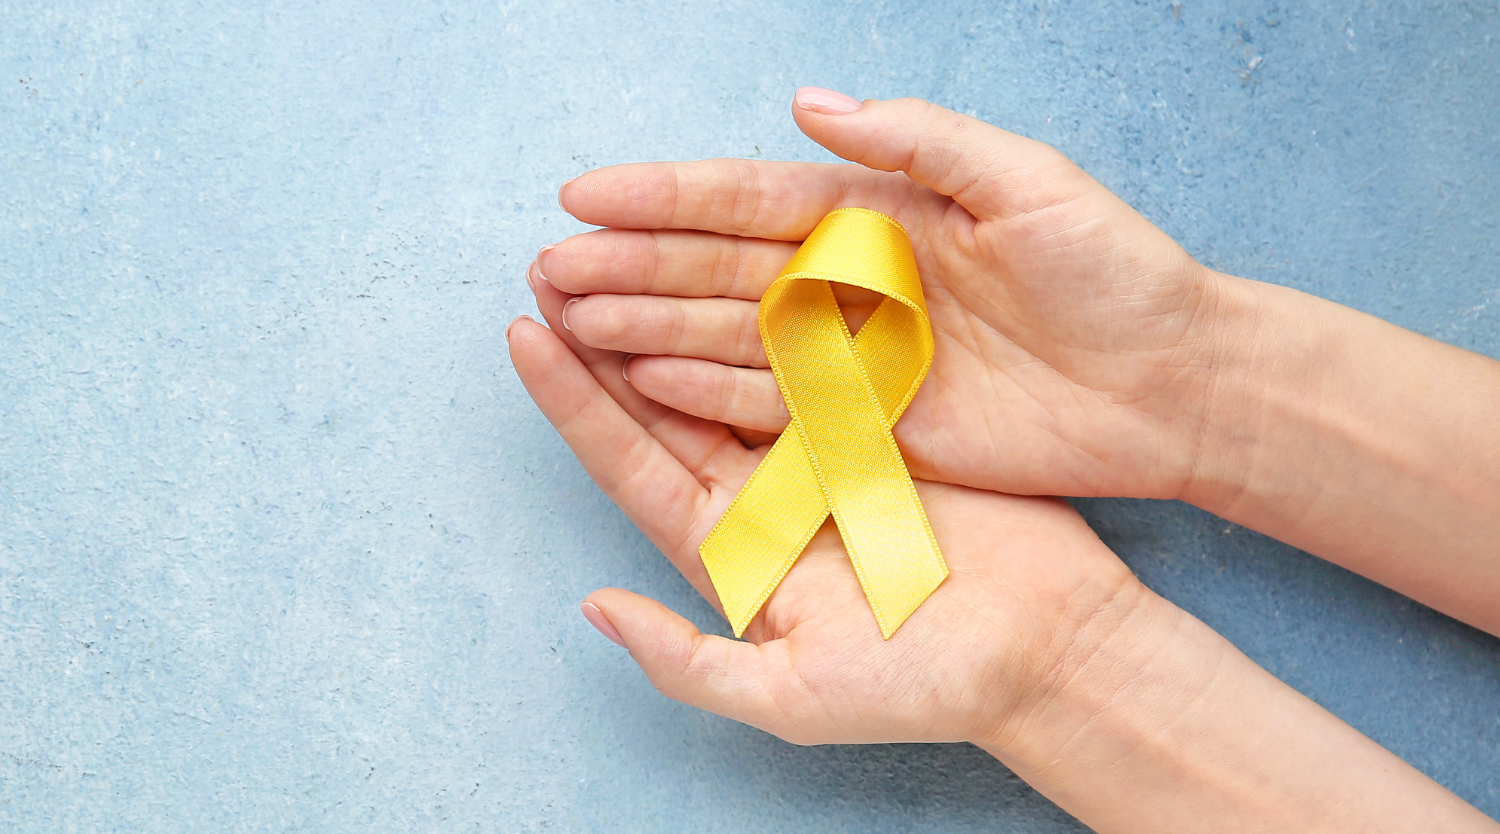 Setembro Amarelo 💛 | Campanha reforça o valor da vida e a prevenção do suicídio